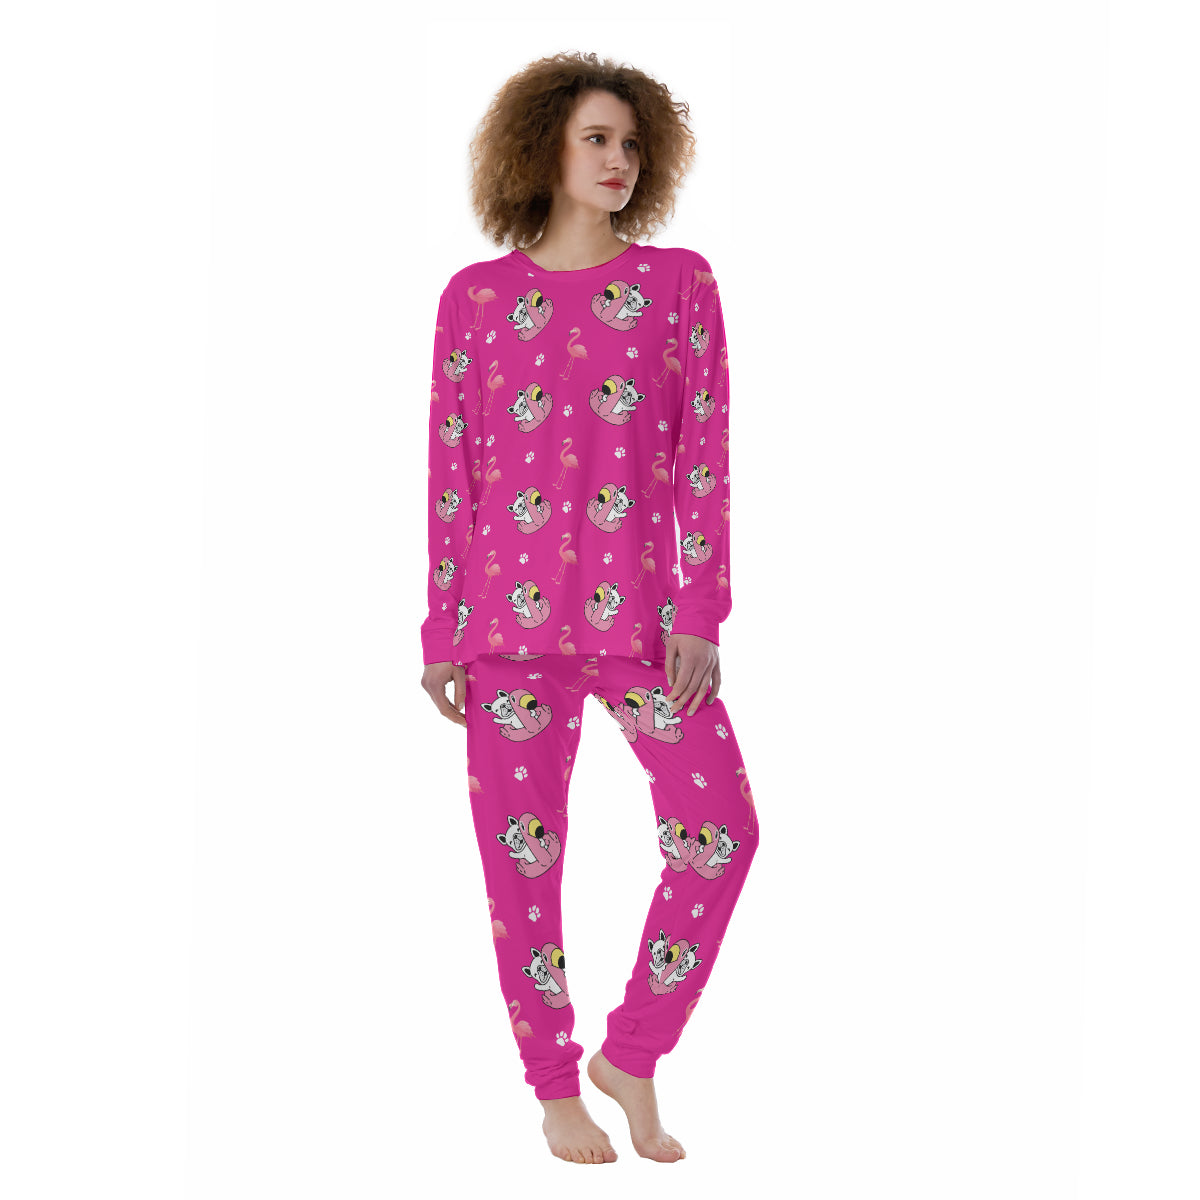 LEXI - Women's Pajamas - Frenchie Bulldog Shop